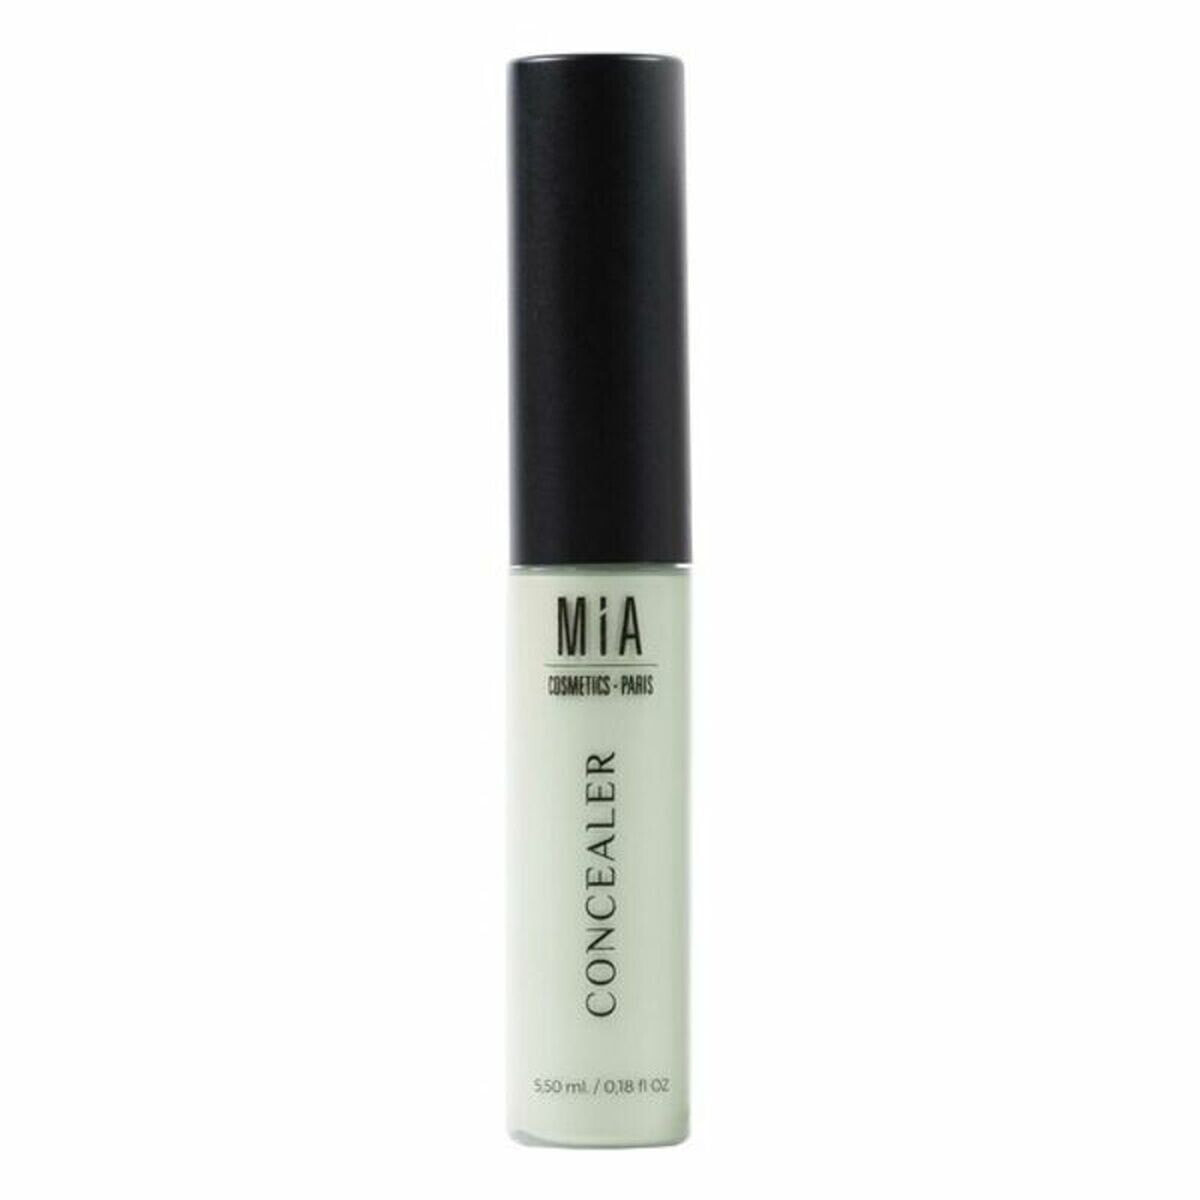 Корректор для лица Mia Cosmetics Paris Concealer 5,5 ml